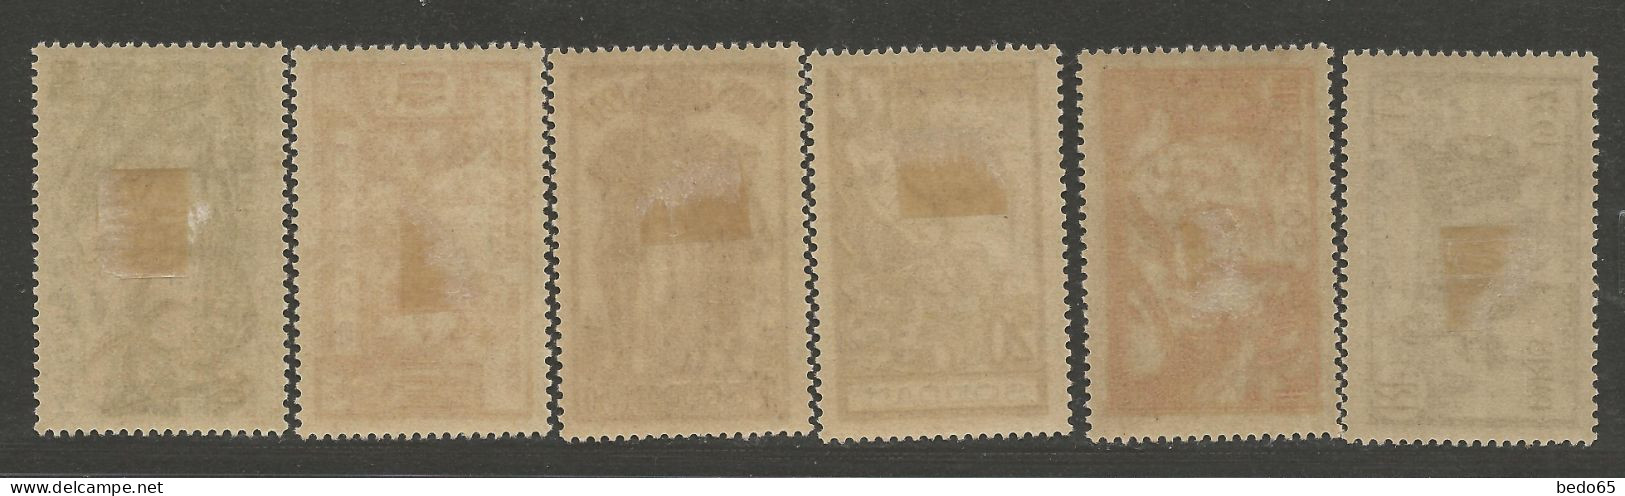 SOUDAN Expo 1937 N° 93 à 98 Série Complète  NEUF* CHARNIERE  / Hinge  / MH - Neufs